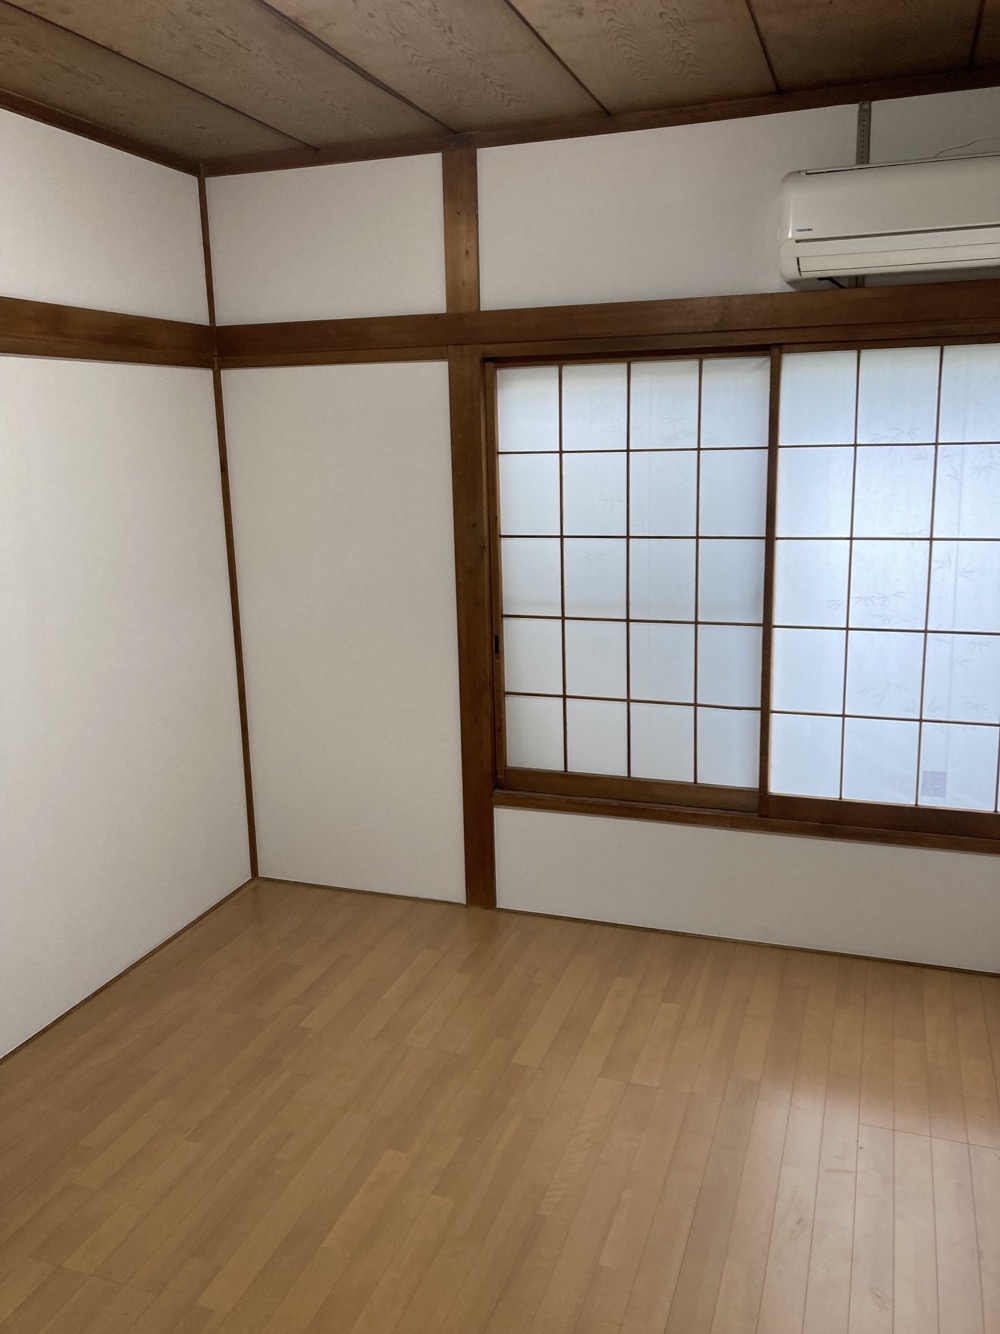 【埼玉県三郷市】O様邸床上張り内装クロス工事は完了しました。NODA Nクラレス 画像